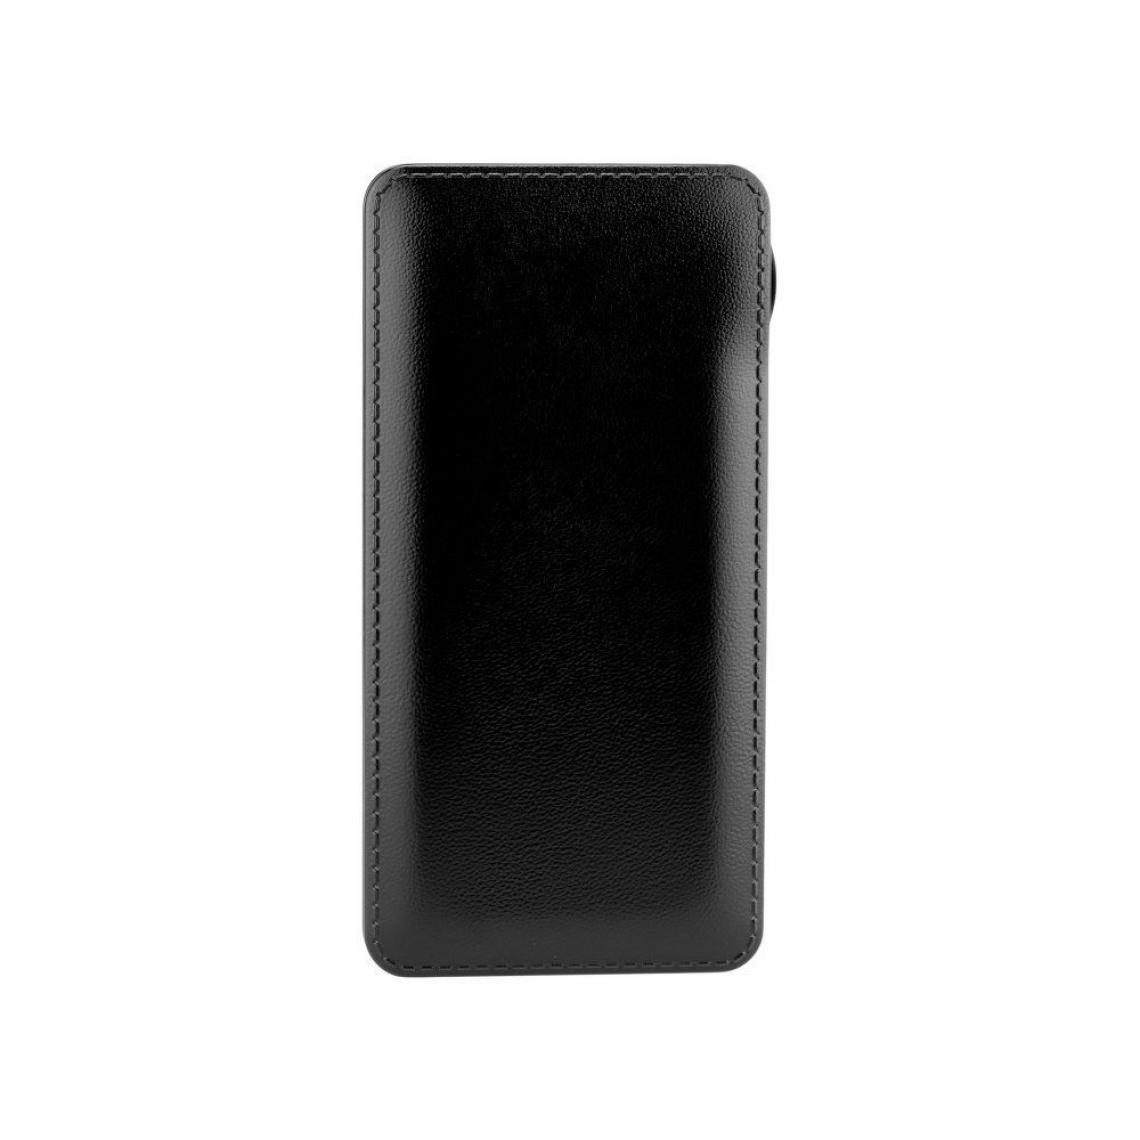 Ozzzo - Chargeur batterie externe 30000 mAh powerbank ozzzo noir pour SAMSUNG N920 Galaxy Note 7 N930fd - Autres accessoires smartphone